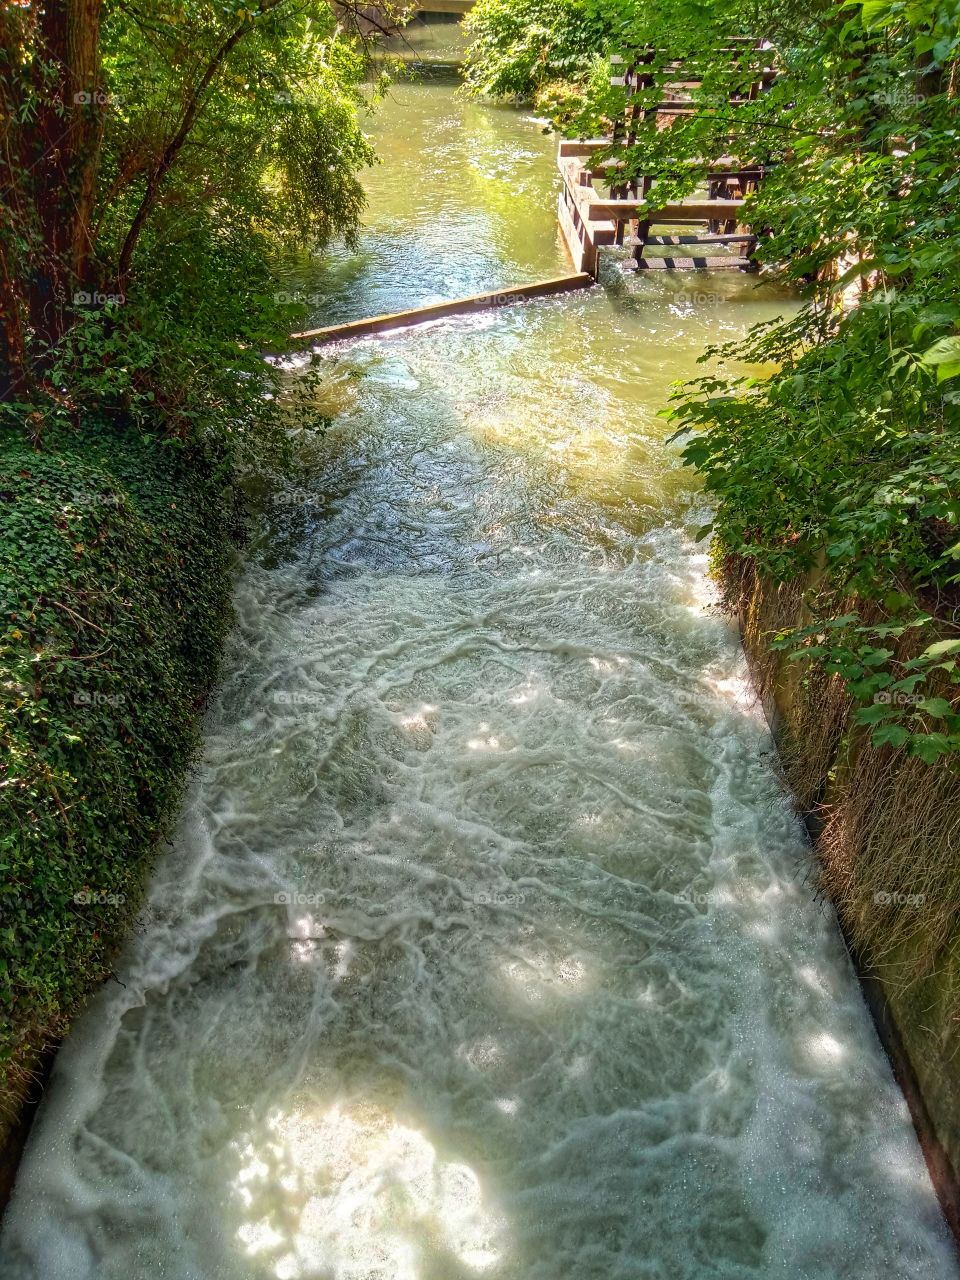 Creek in summer, Mögeldorf Nürnberg